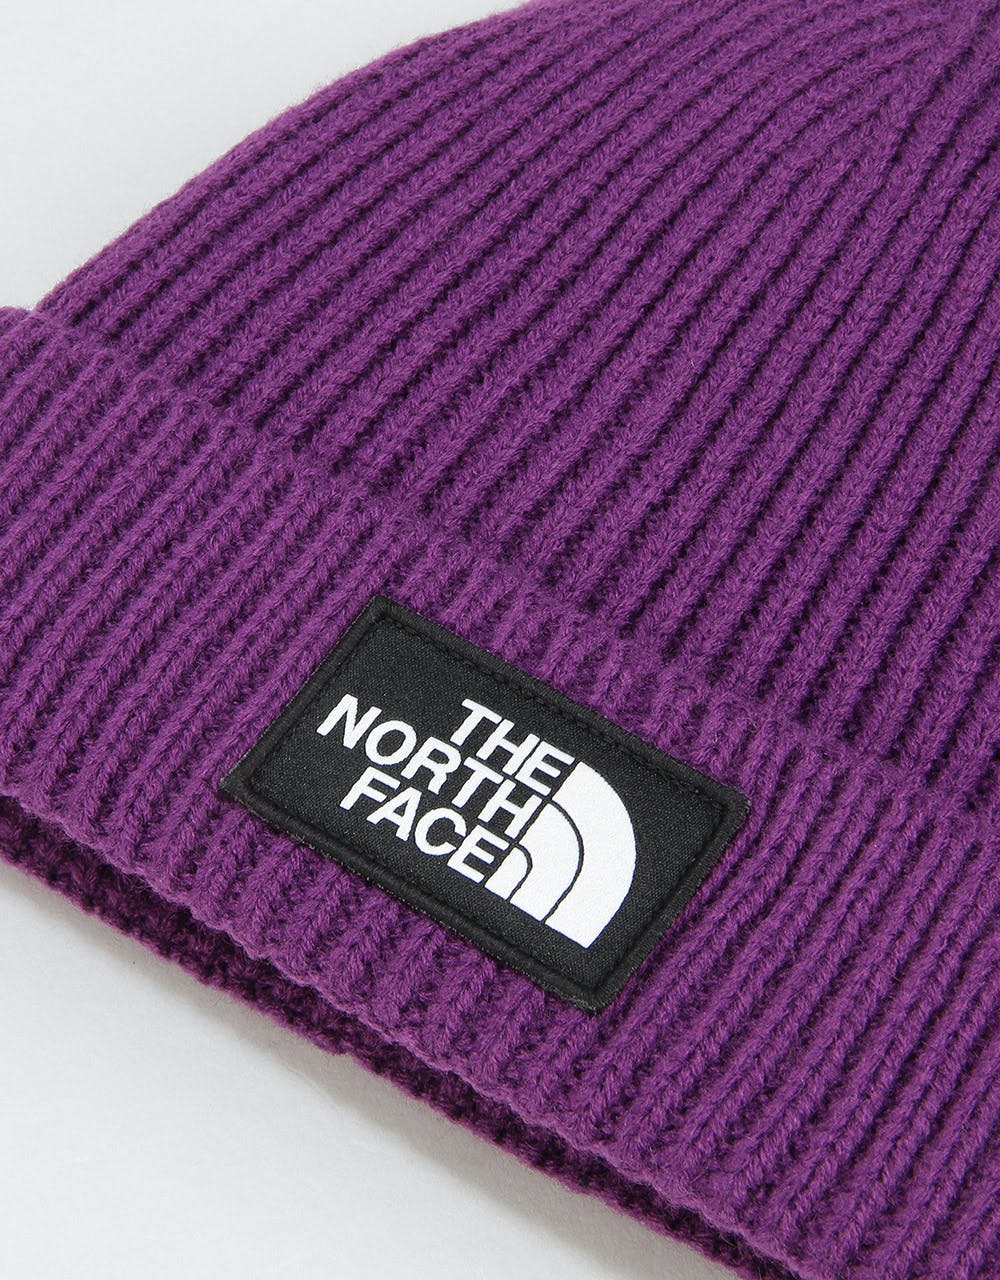 The North Face Logo Box Cuffed Beanie - Hero Purple